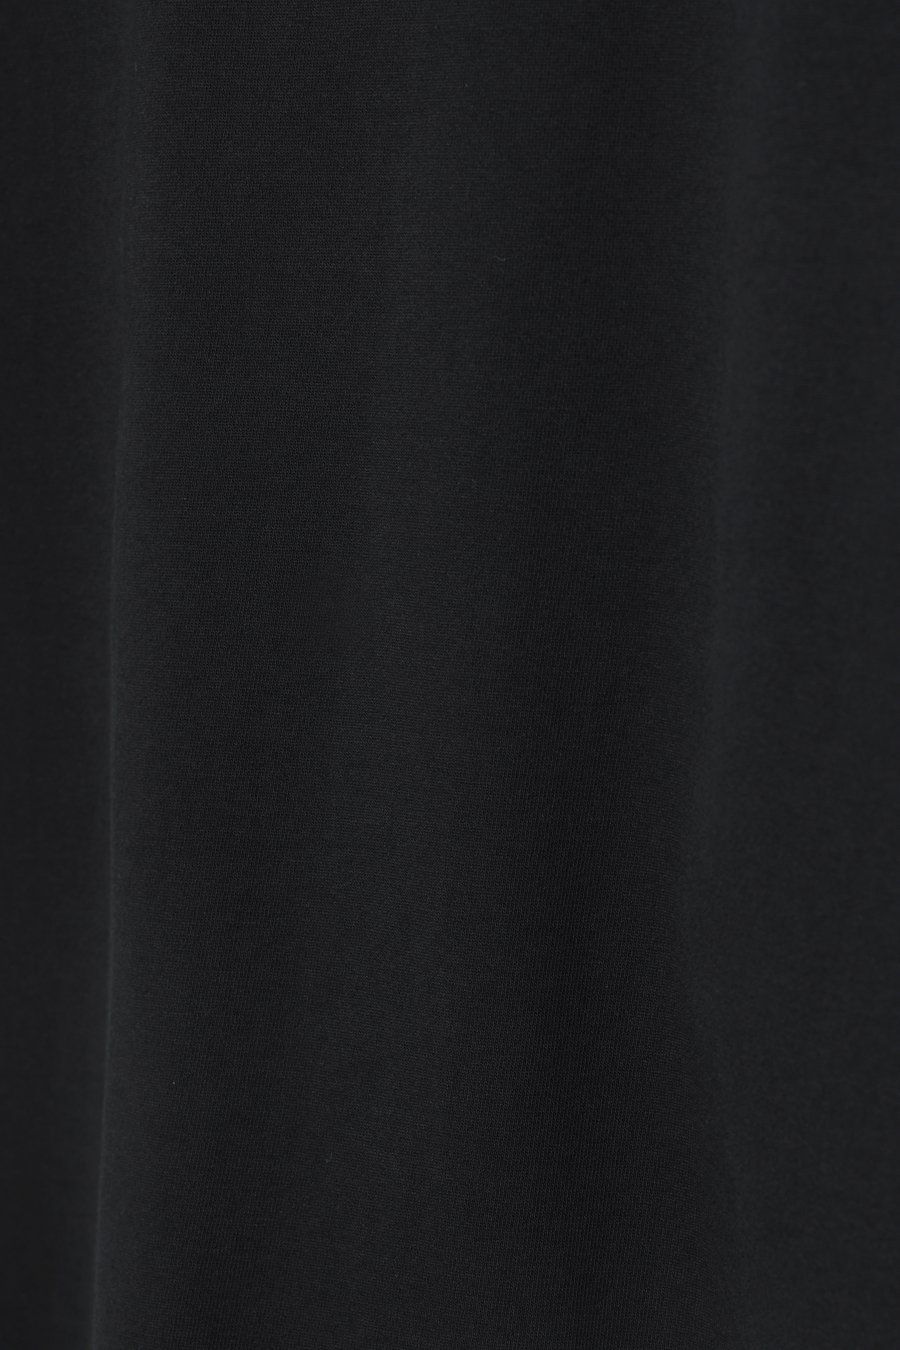 인사일런스(IN SILENCE) 라이트웨이트 패널 스웨트셔츠 BLACK